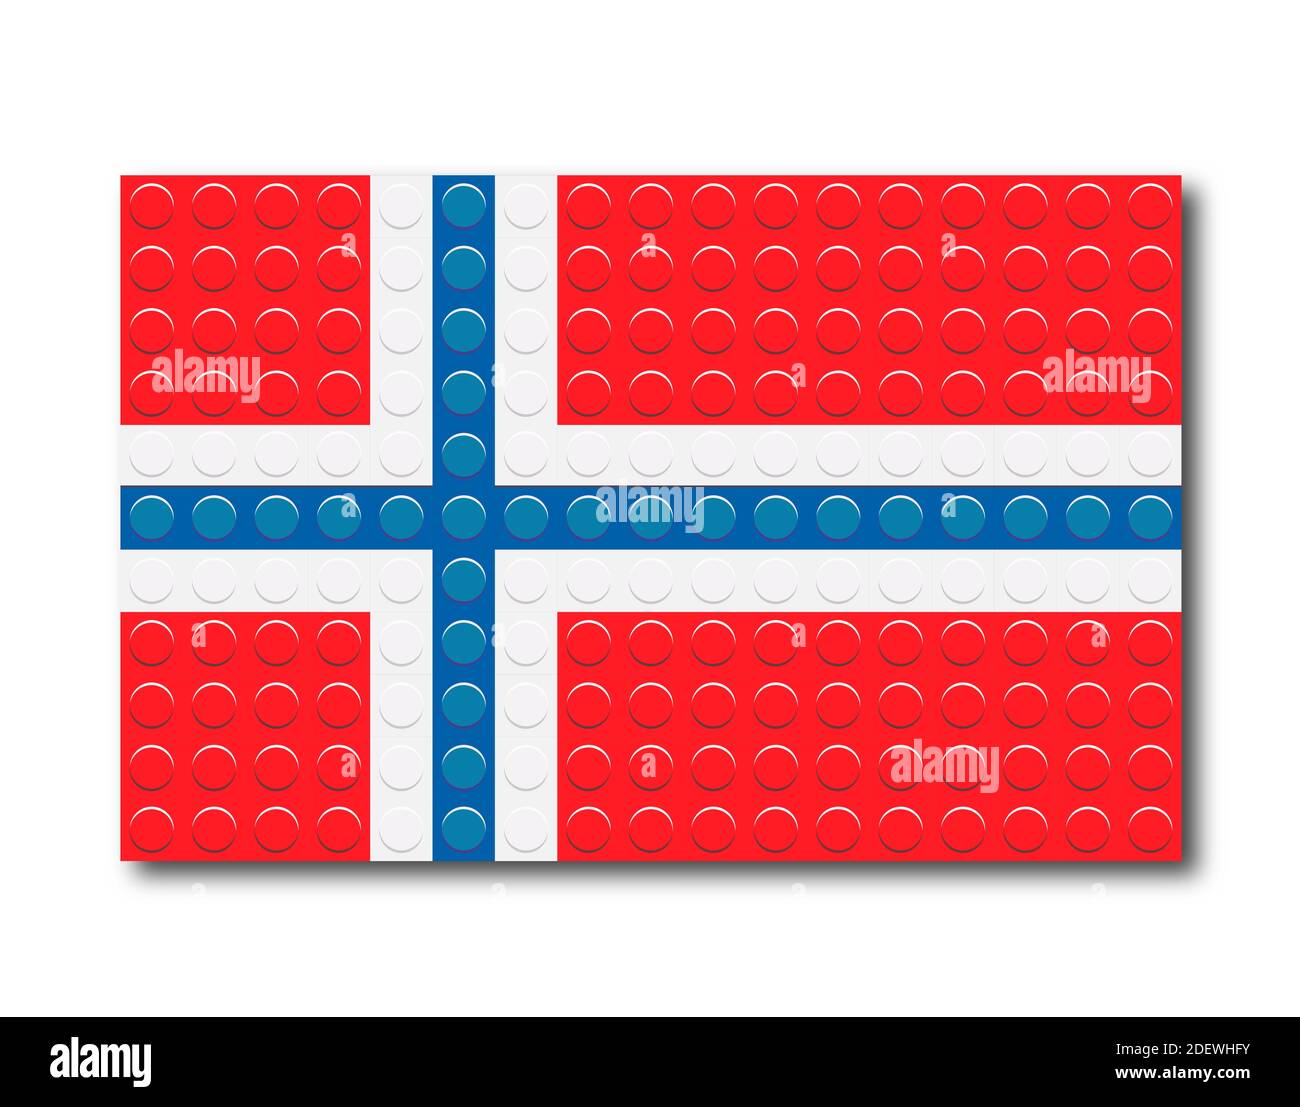 Verpixelte Norwegen-Flagge von Bauteilen. Vektorgrafik ist auf weißem Hintergrund isoliert. Stock Vektor